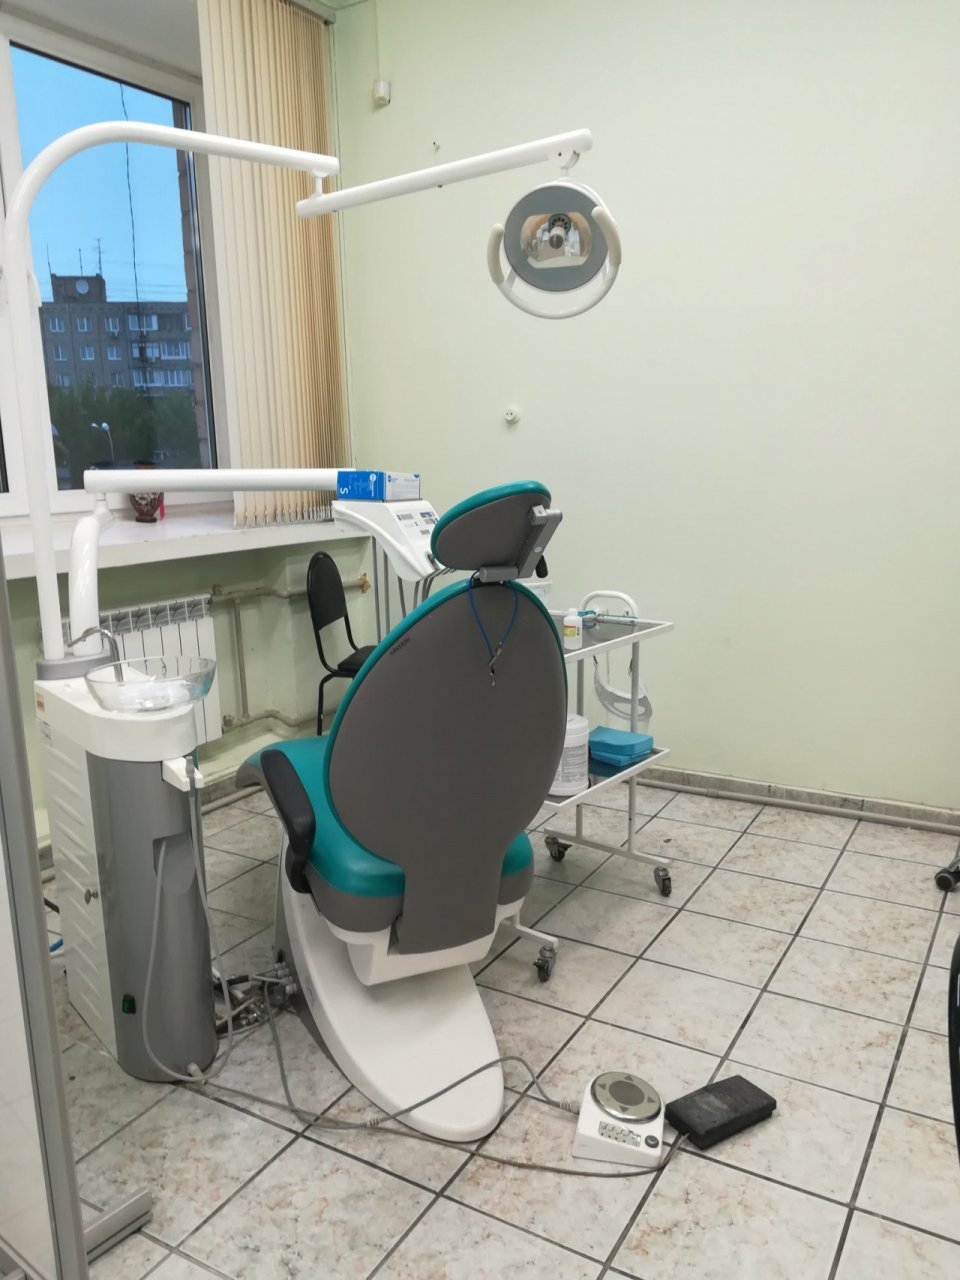 13-летнего мальчика ударило током при лечении зуба у школьного стоматолога в Дзержинске